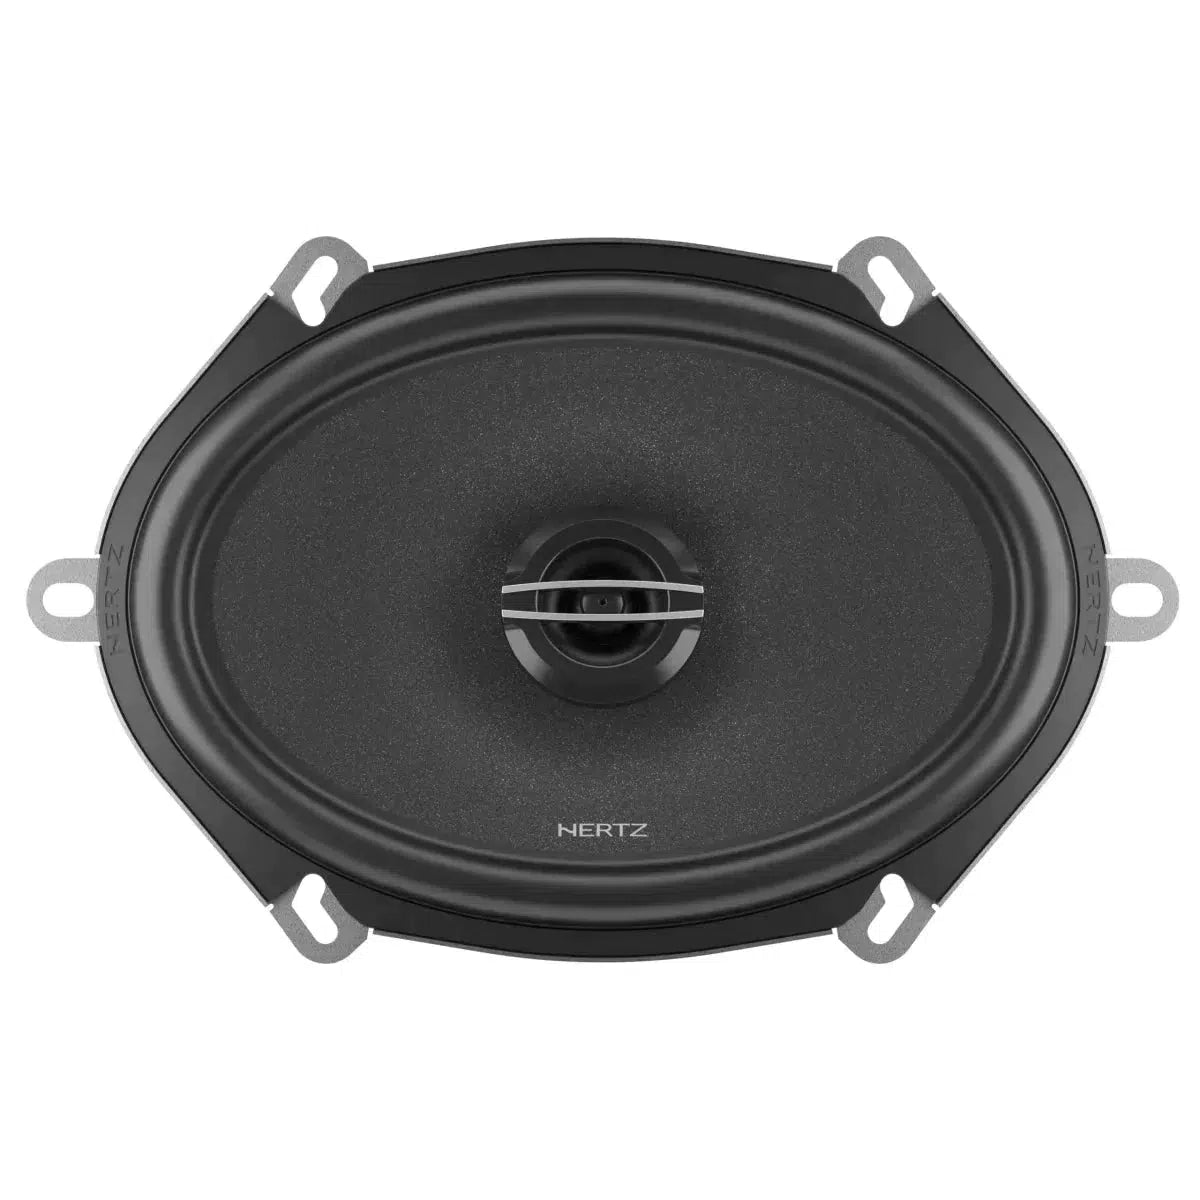 Hertz-Cento CX 570-5 "x7" coaxial loudspeaker-Masori.de